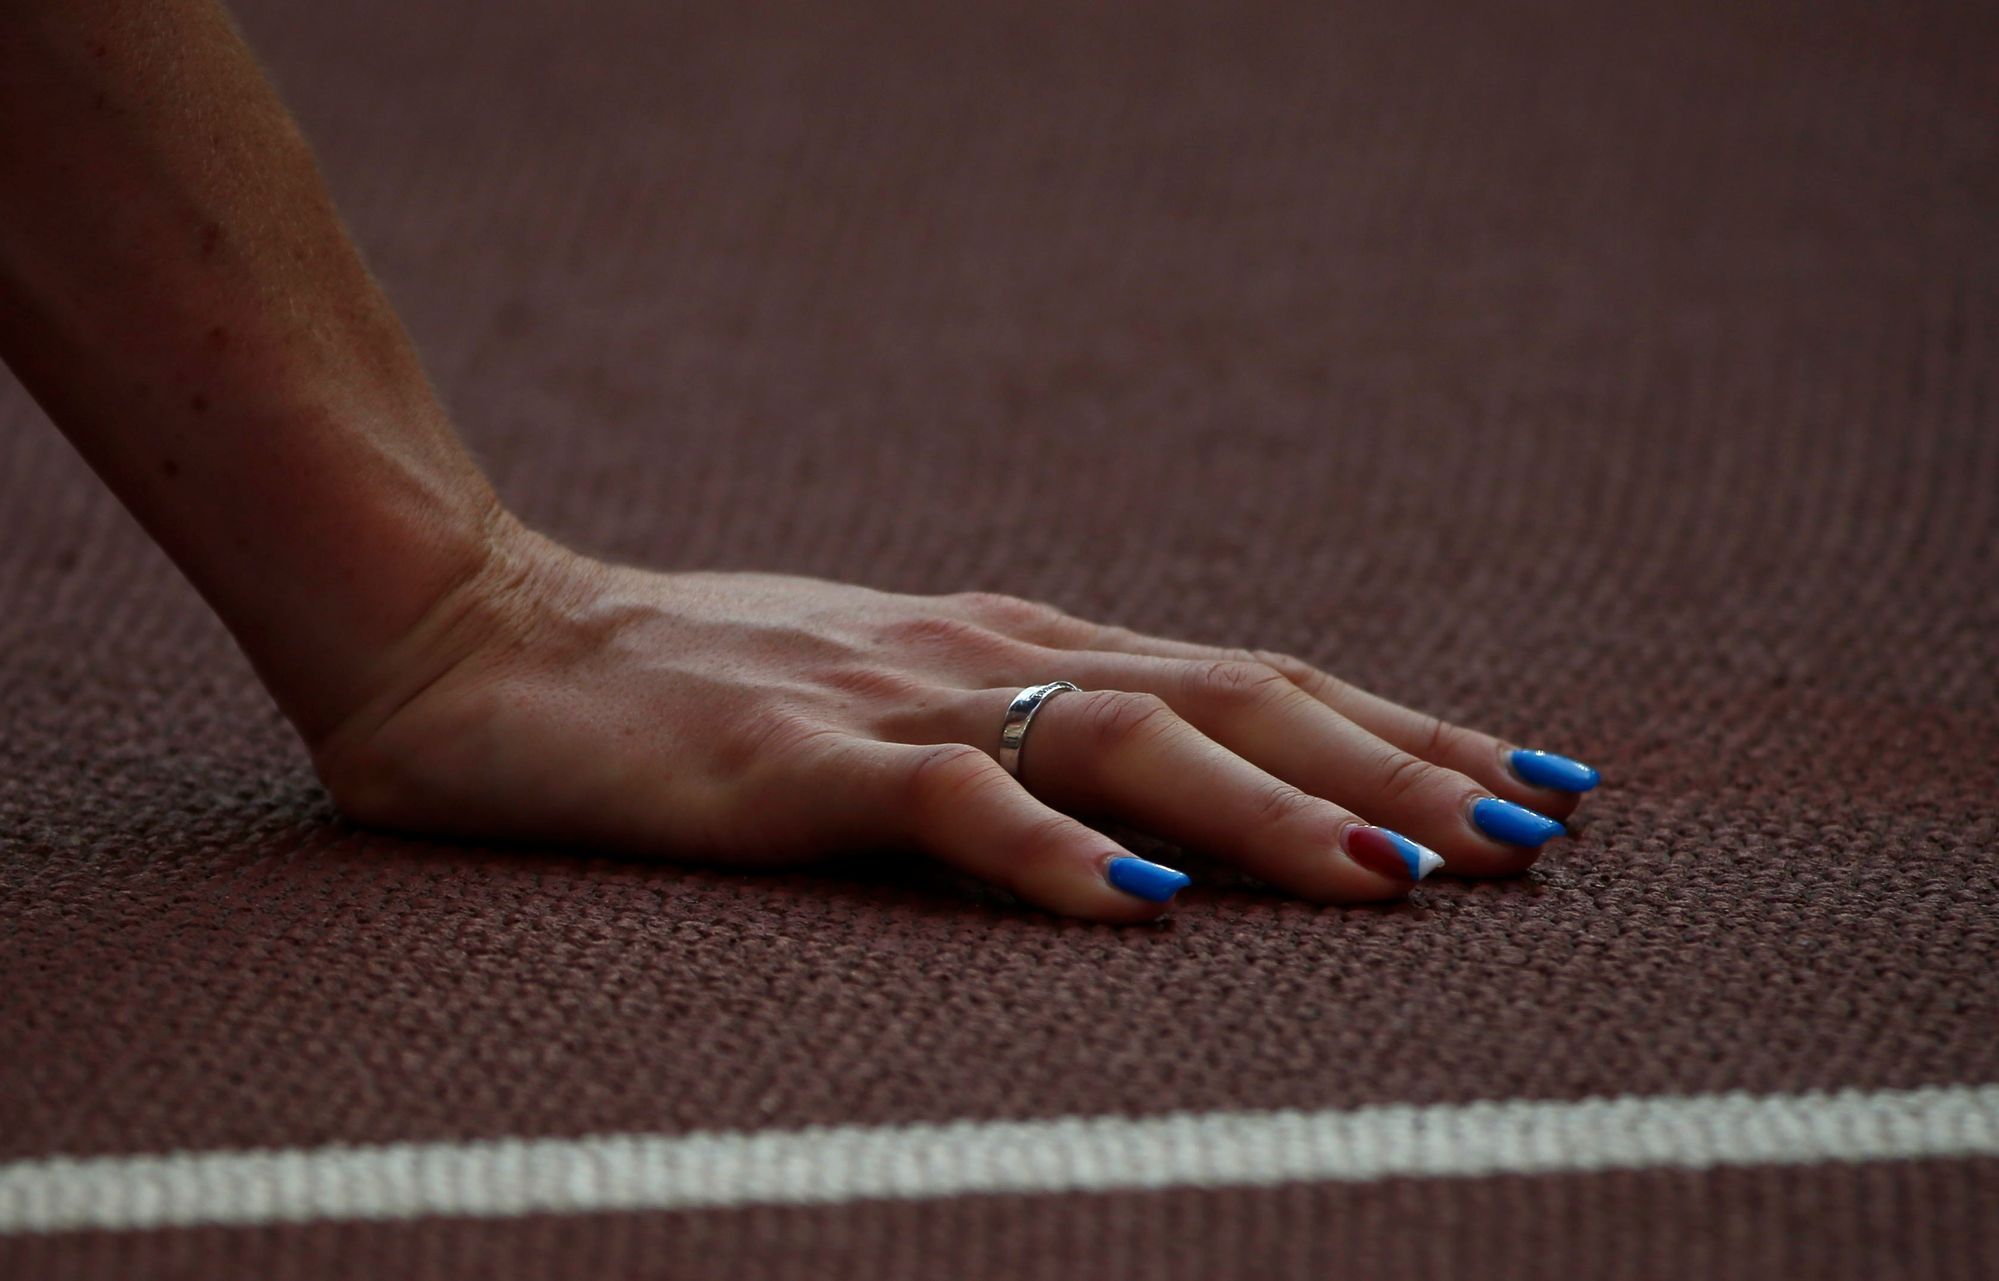 MS v atletice 2015, 400 m př. Ž:: Zuzana Hejnováv - nehty